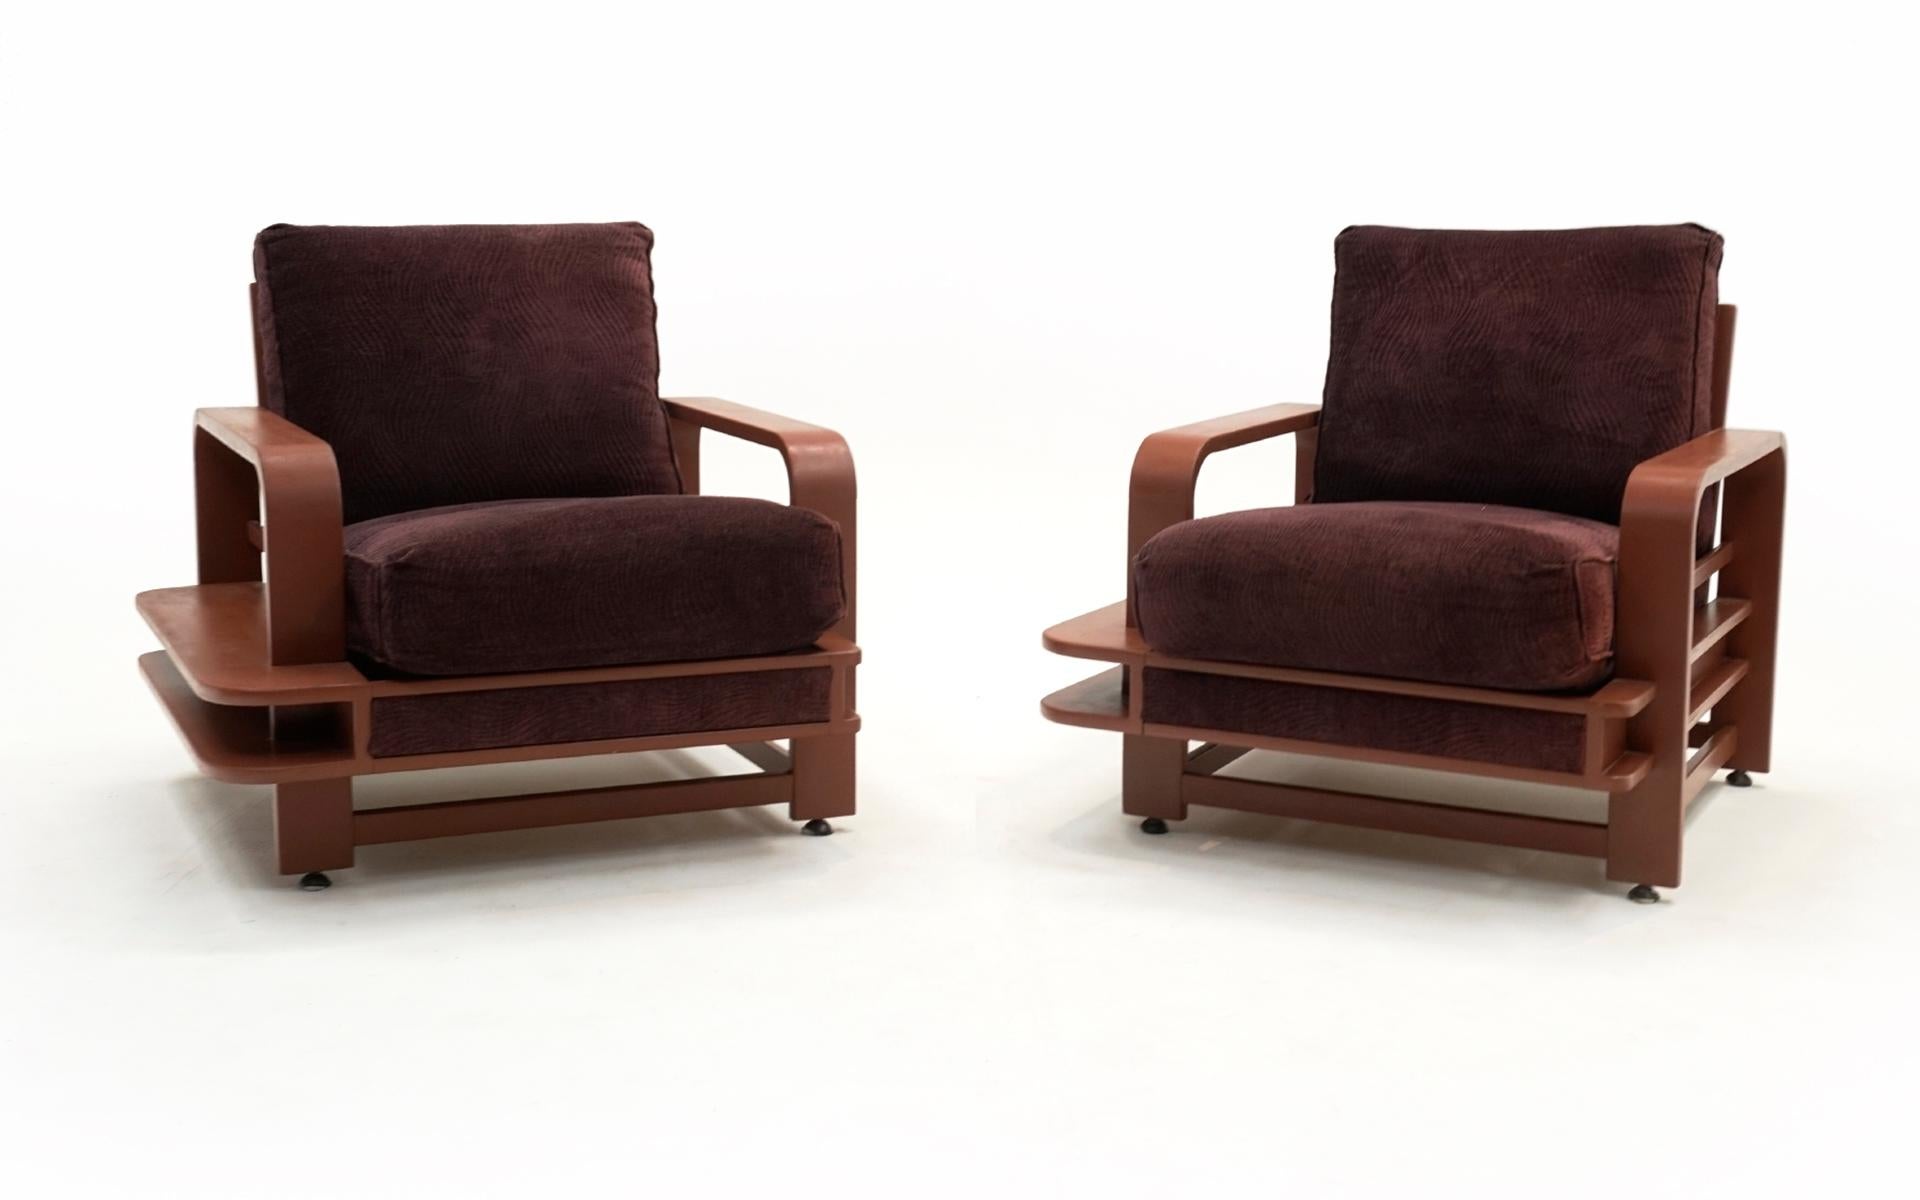 Rarement vu, ensemble de deux grandes chaises de salon Russel Wright (Russell Wright) avec des cadres d'étagères en bois.  Rembourré ces dernières années.  Très confortable. 